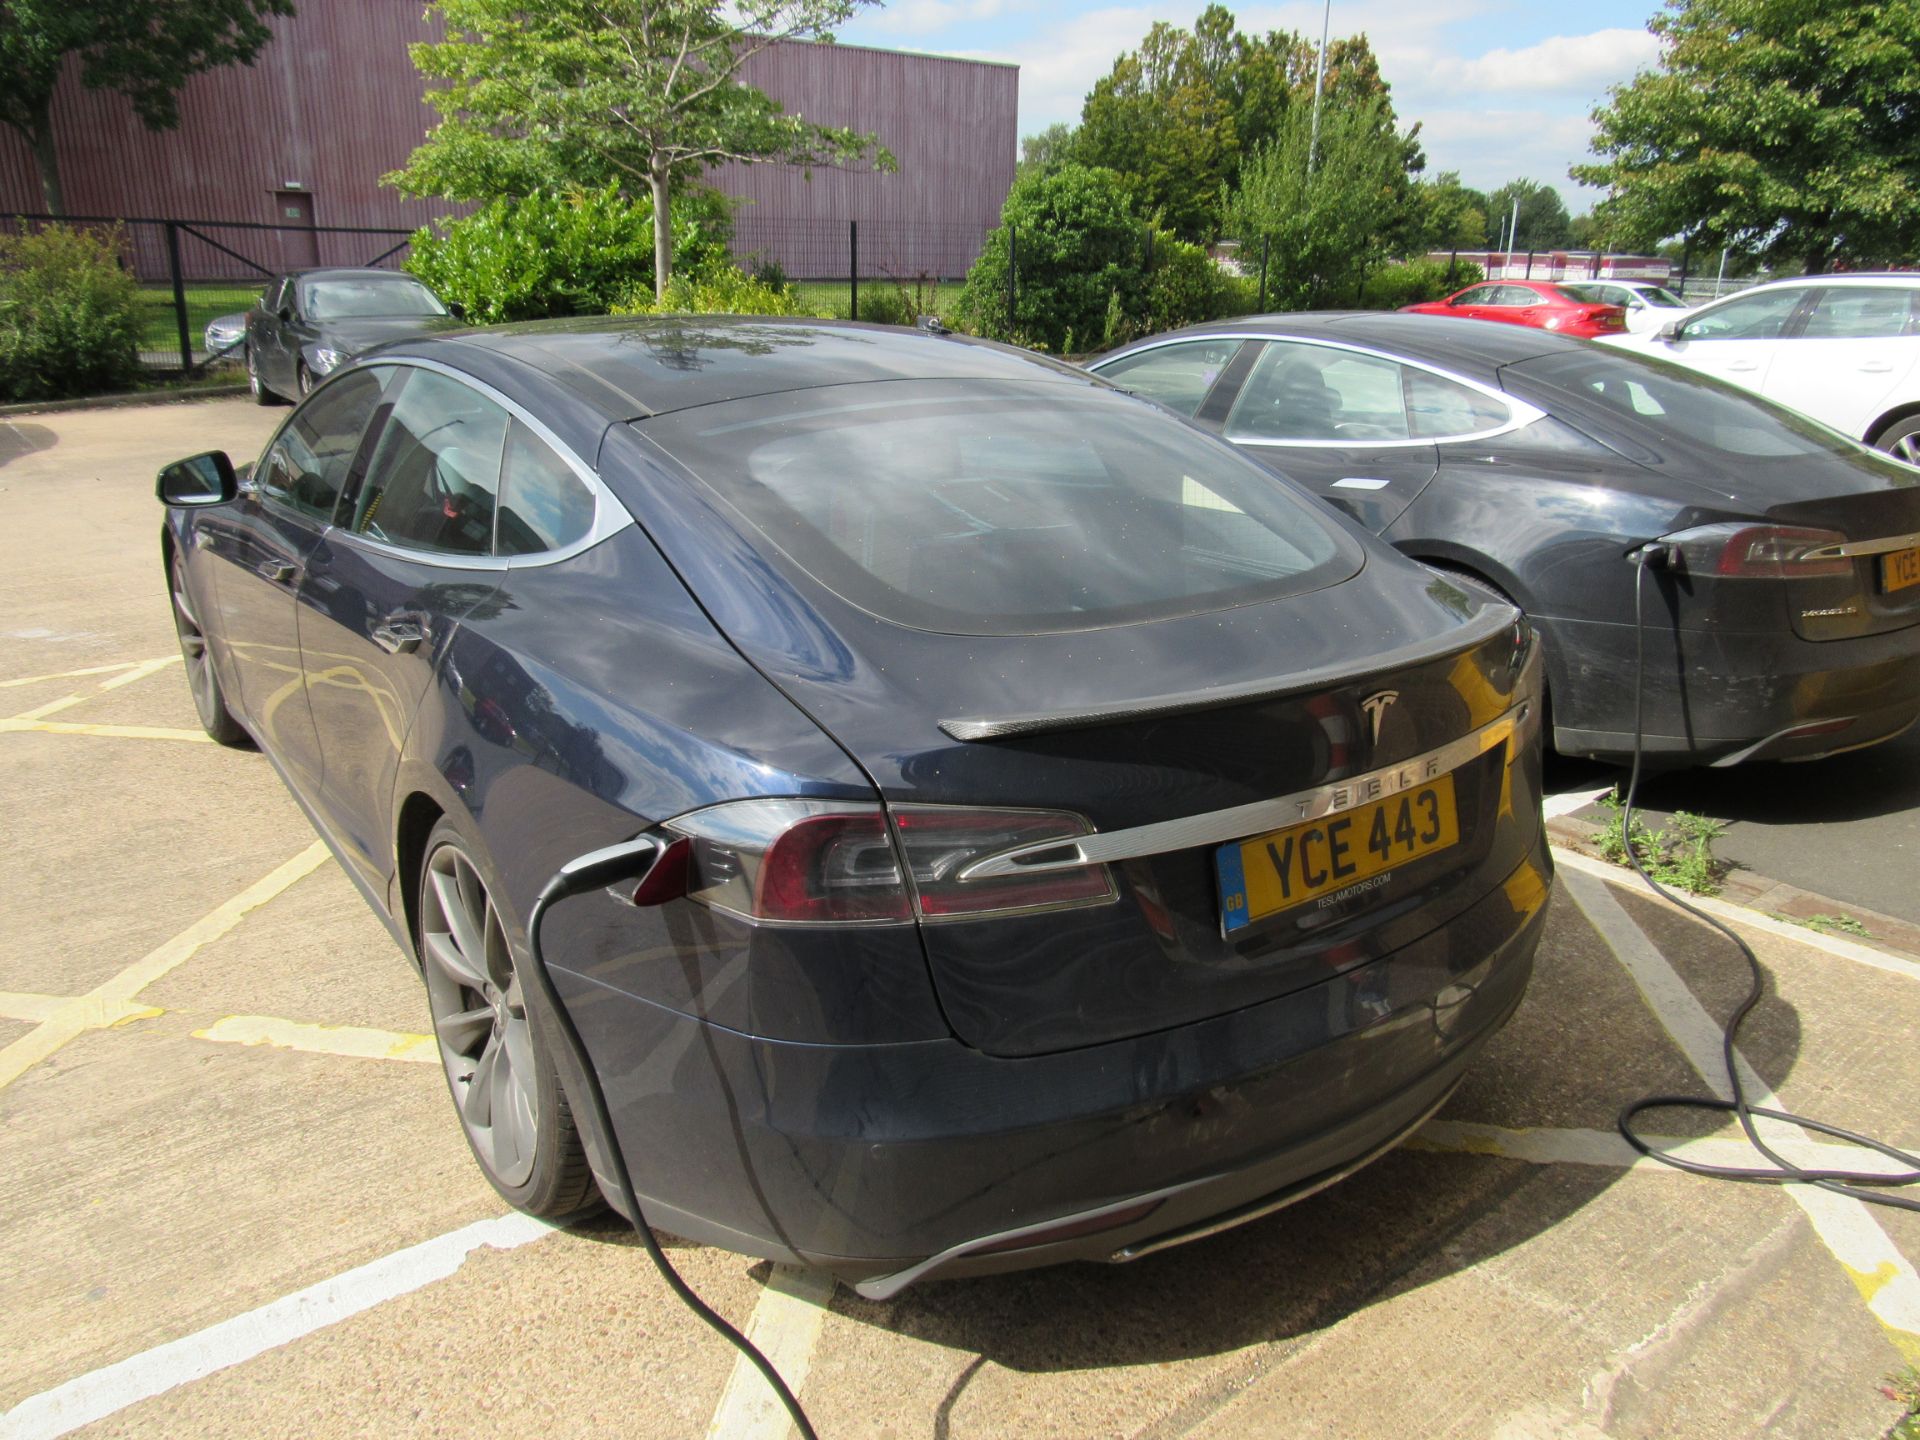 Tesla Model S, 5 Door Hatchback, Electric, Date of - Image 10 of 15